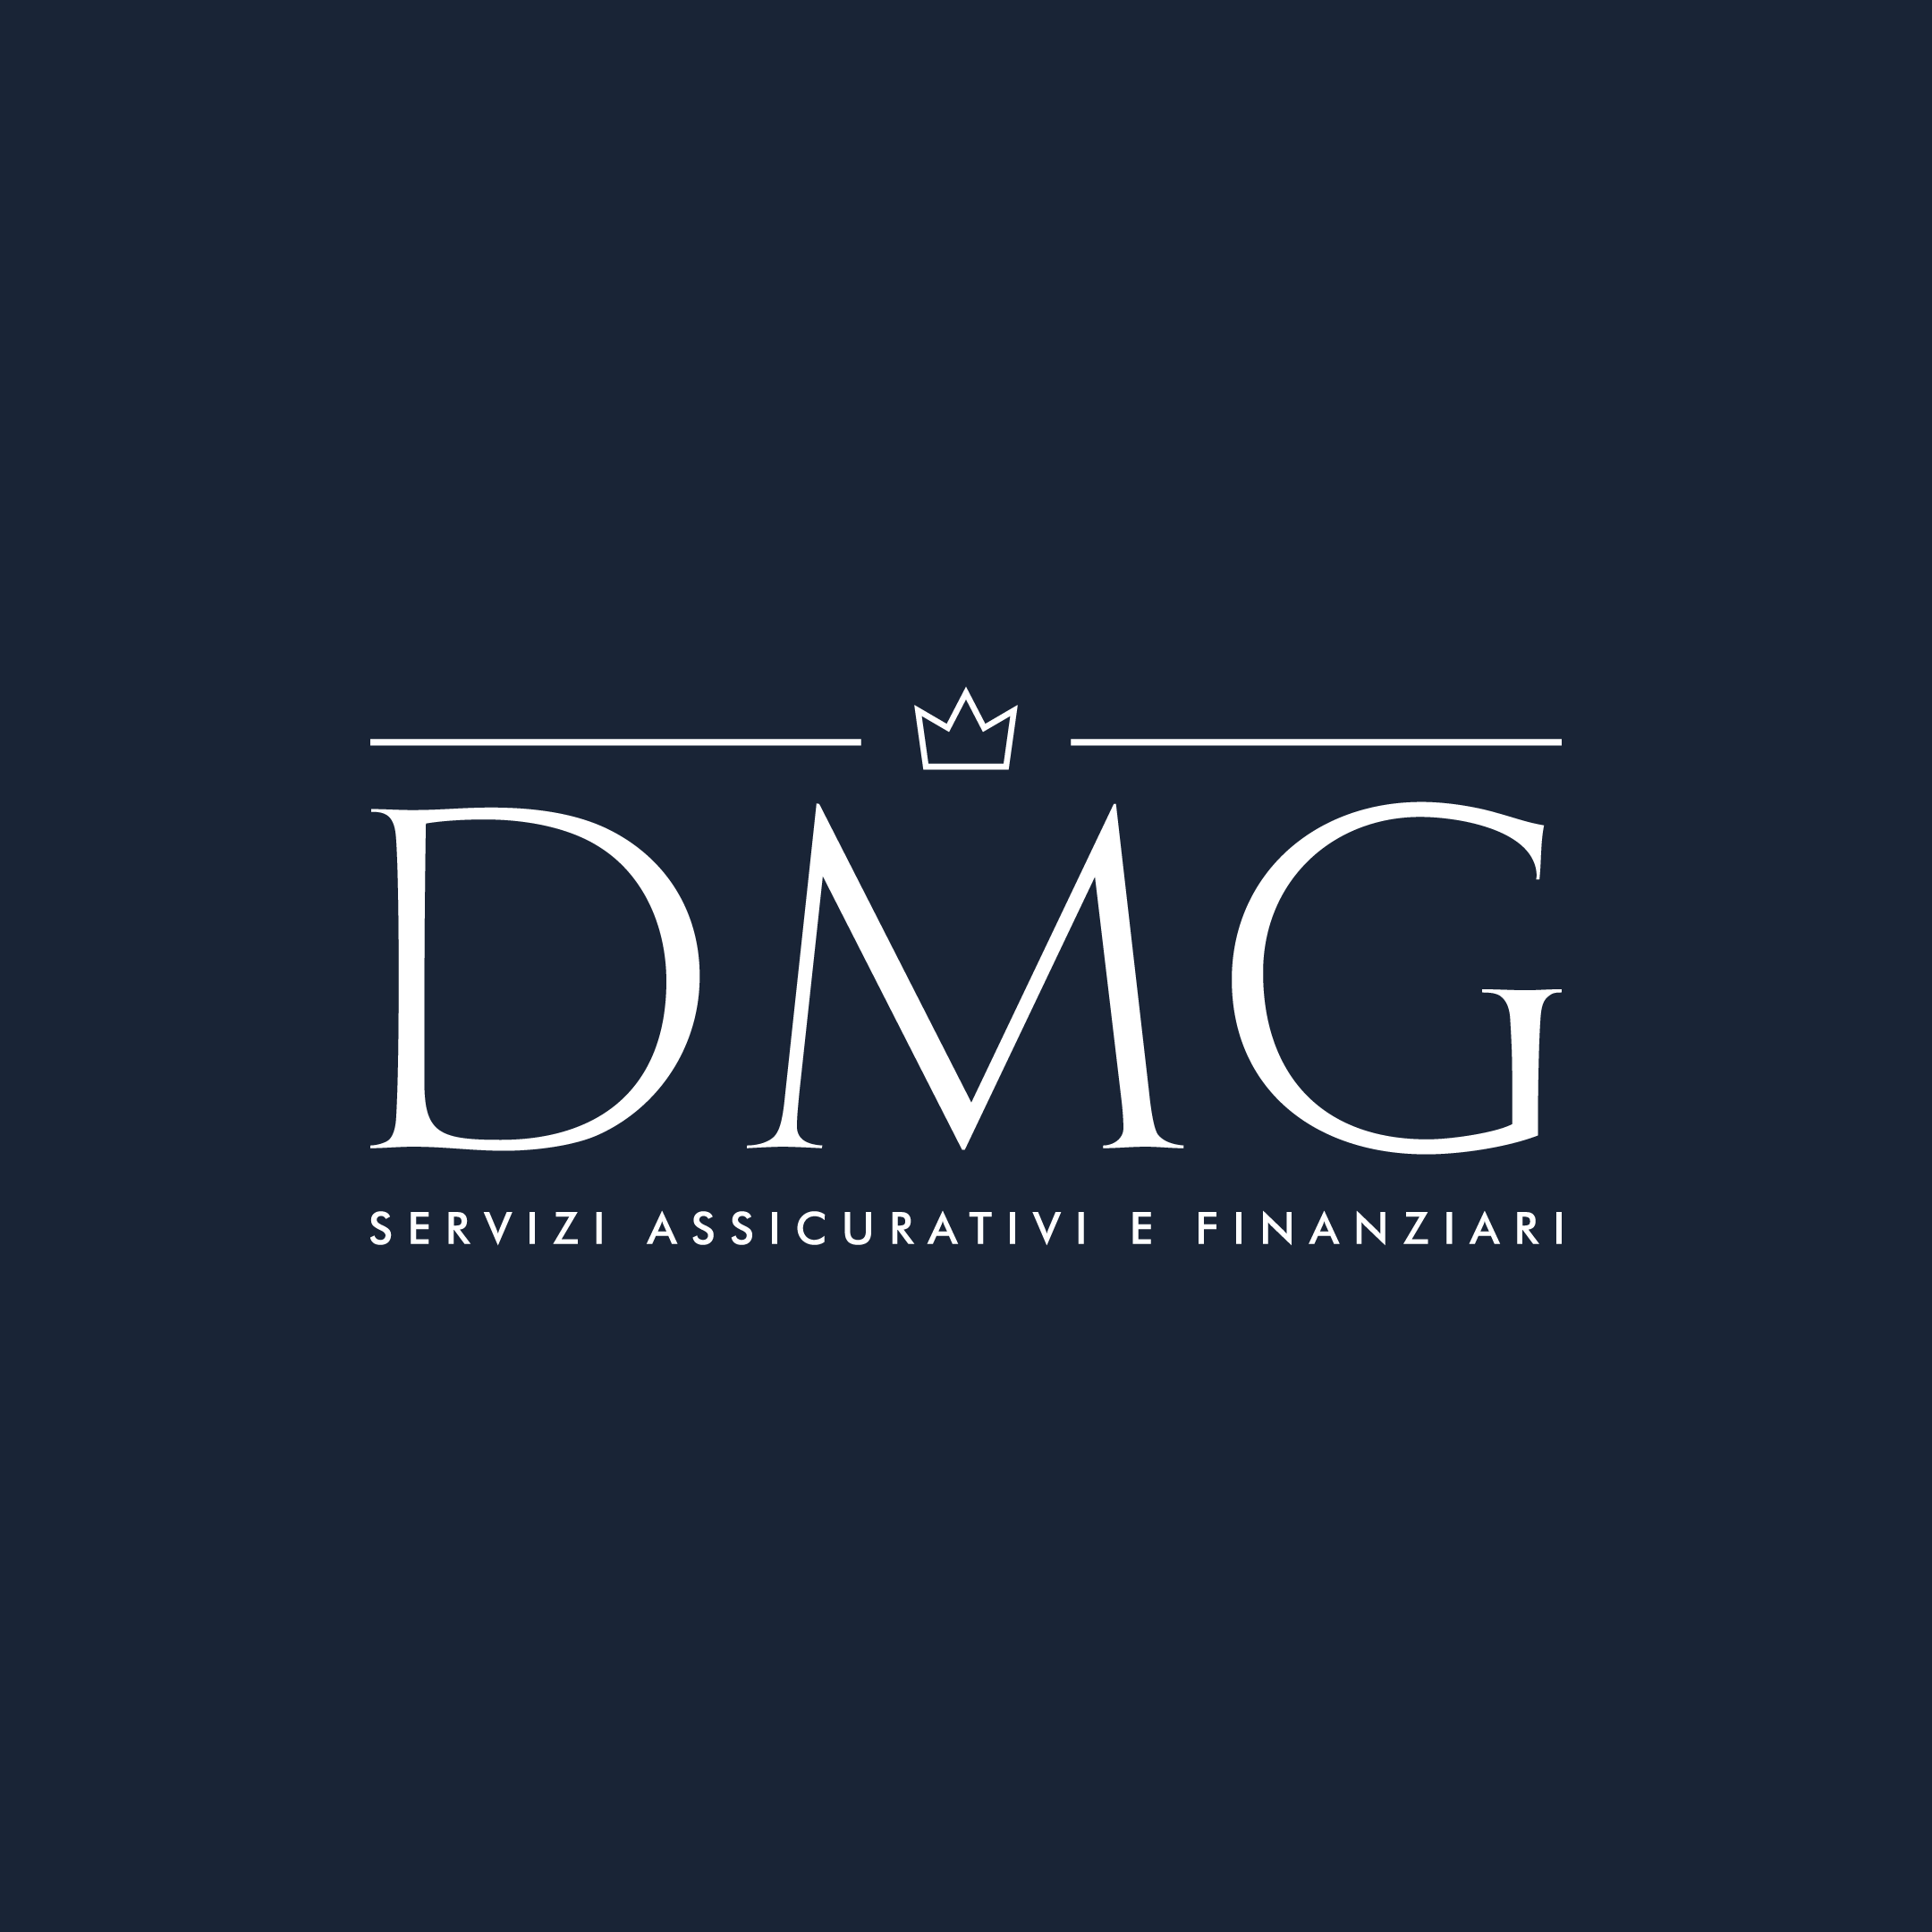 DMG Servizi Assicurativi e Finanziari